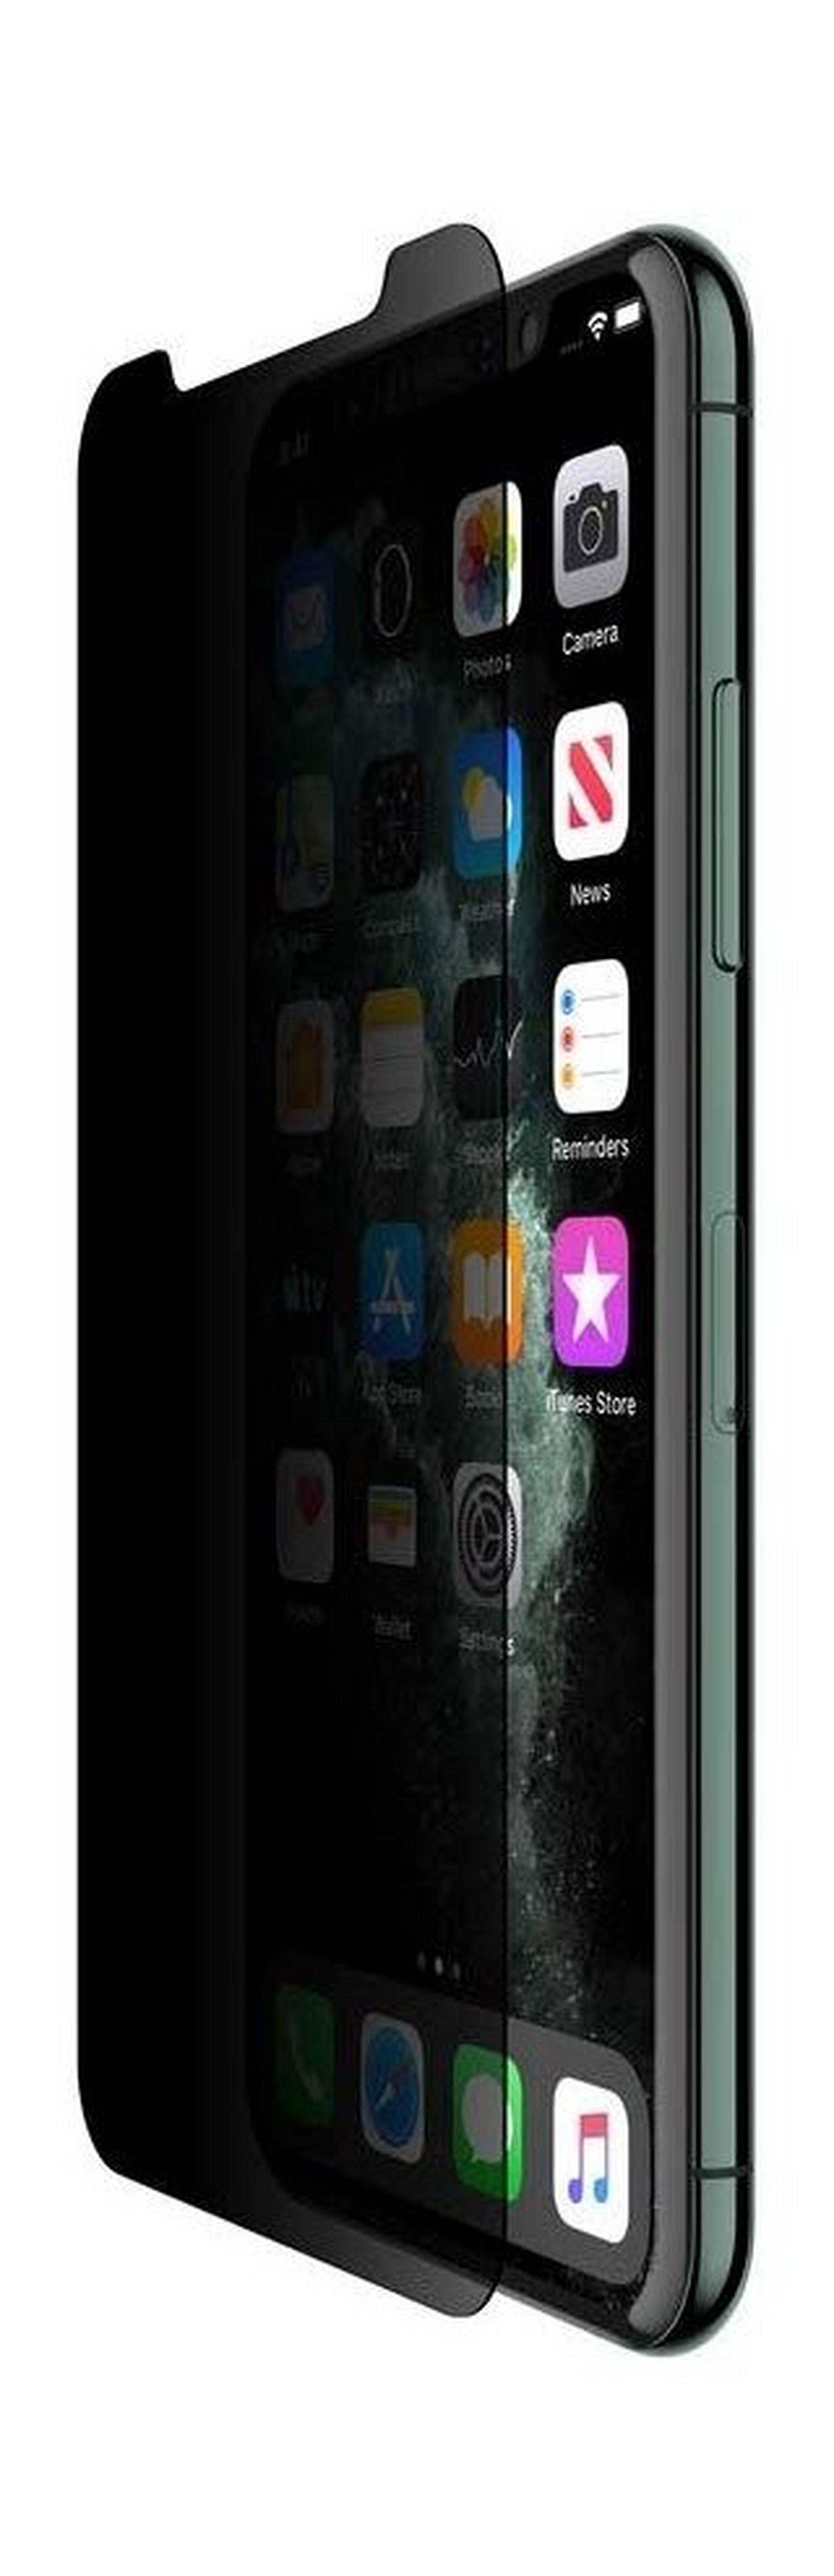 واقي الشاشة بيلكين إنفيزي جلاس لهاتف أيفون 11 – أسود